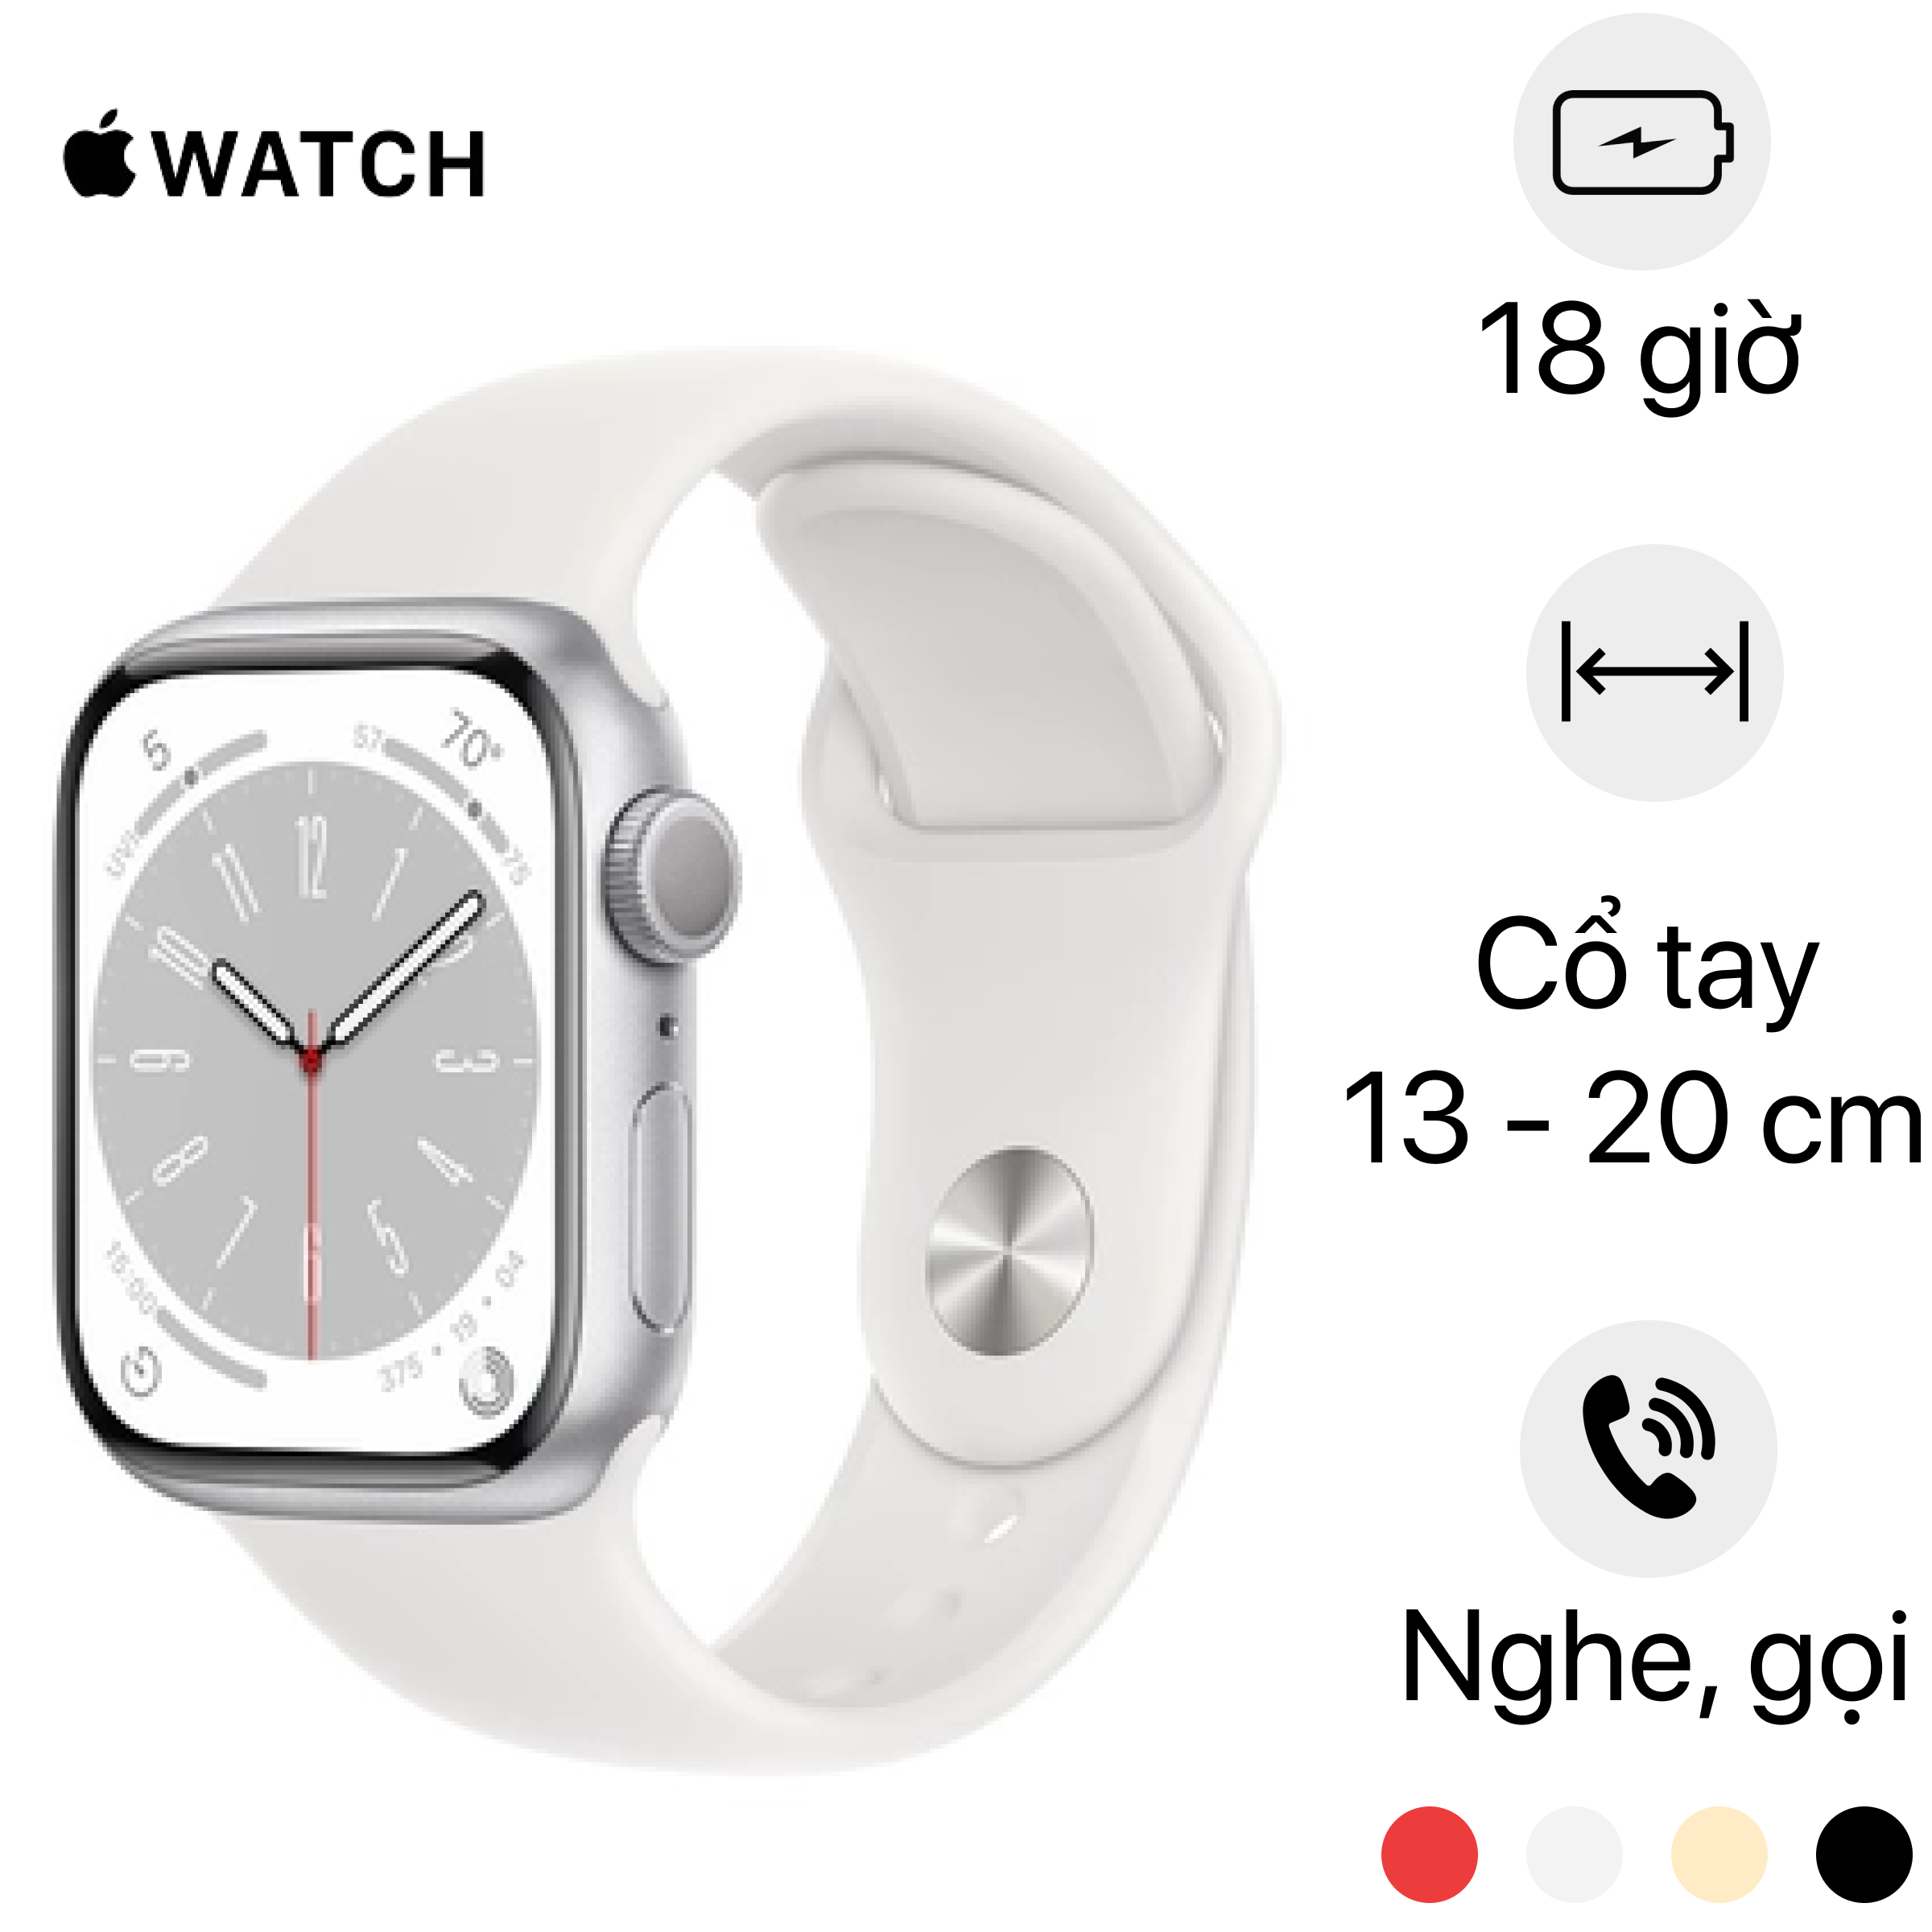 Đồng hồ Apple watch series Giá rẻ, ưu đãi tốt